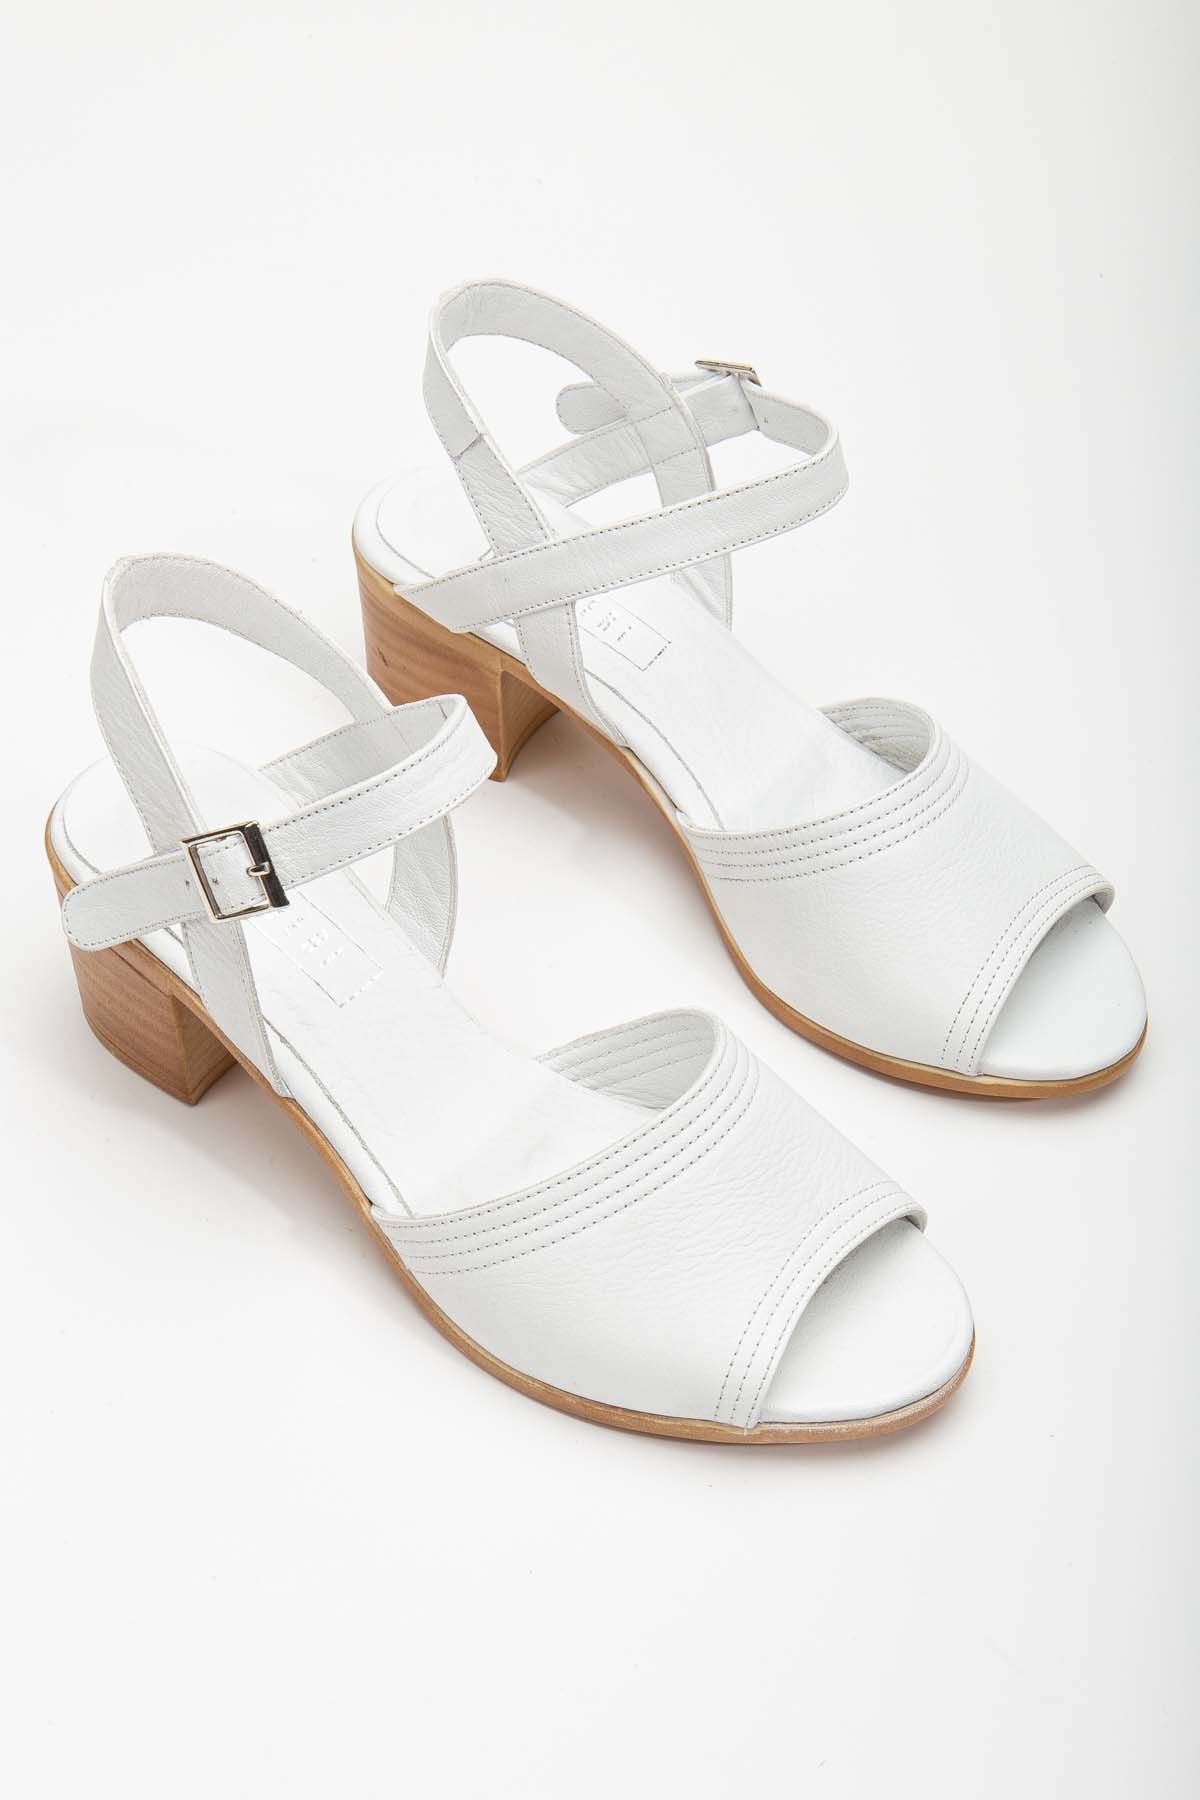 Jolıe Hakiki Deri Tek Bantlı Kadın Topuklu Ayakkabı (B2186 ) - Beyaz